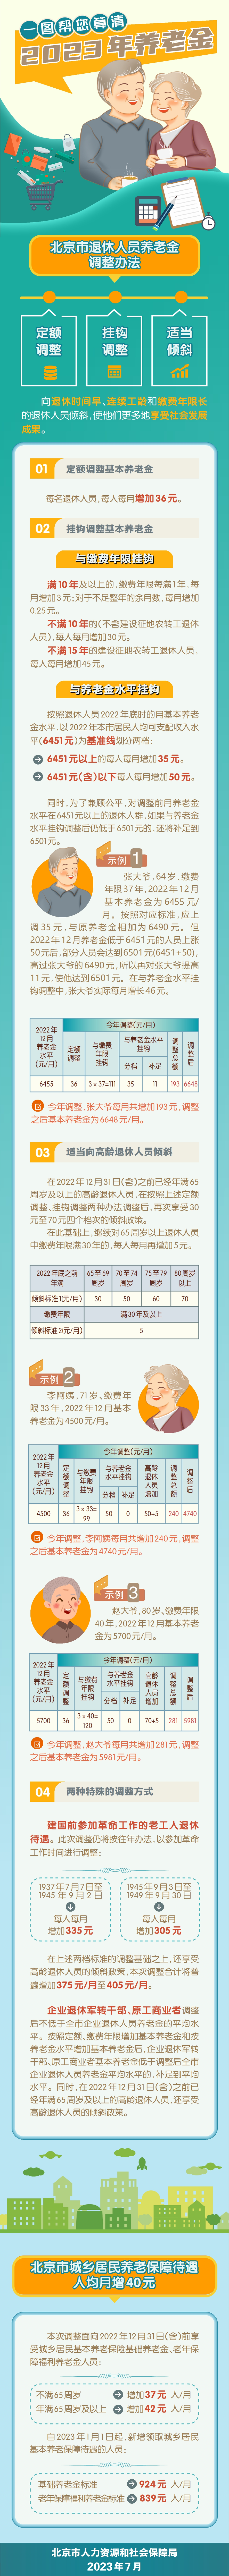 北京养老金上涨 补发养老金7月底前发放到位